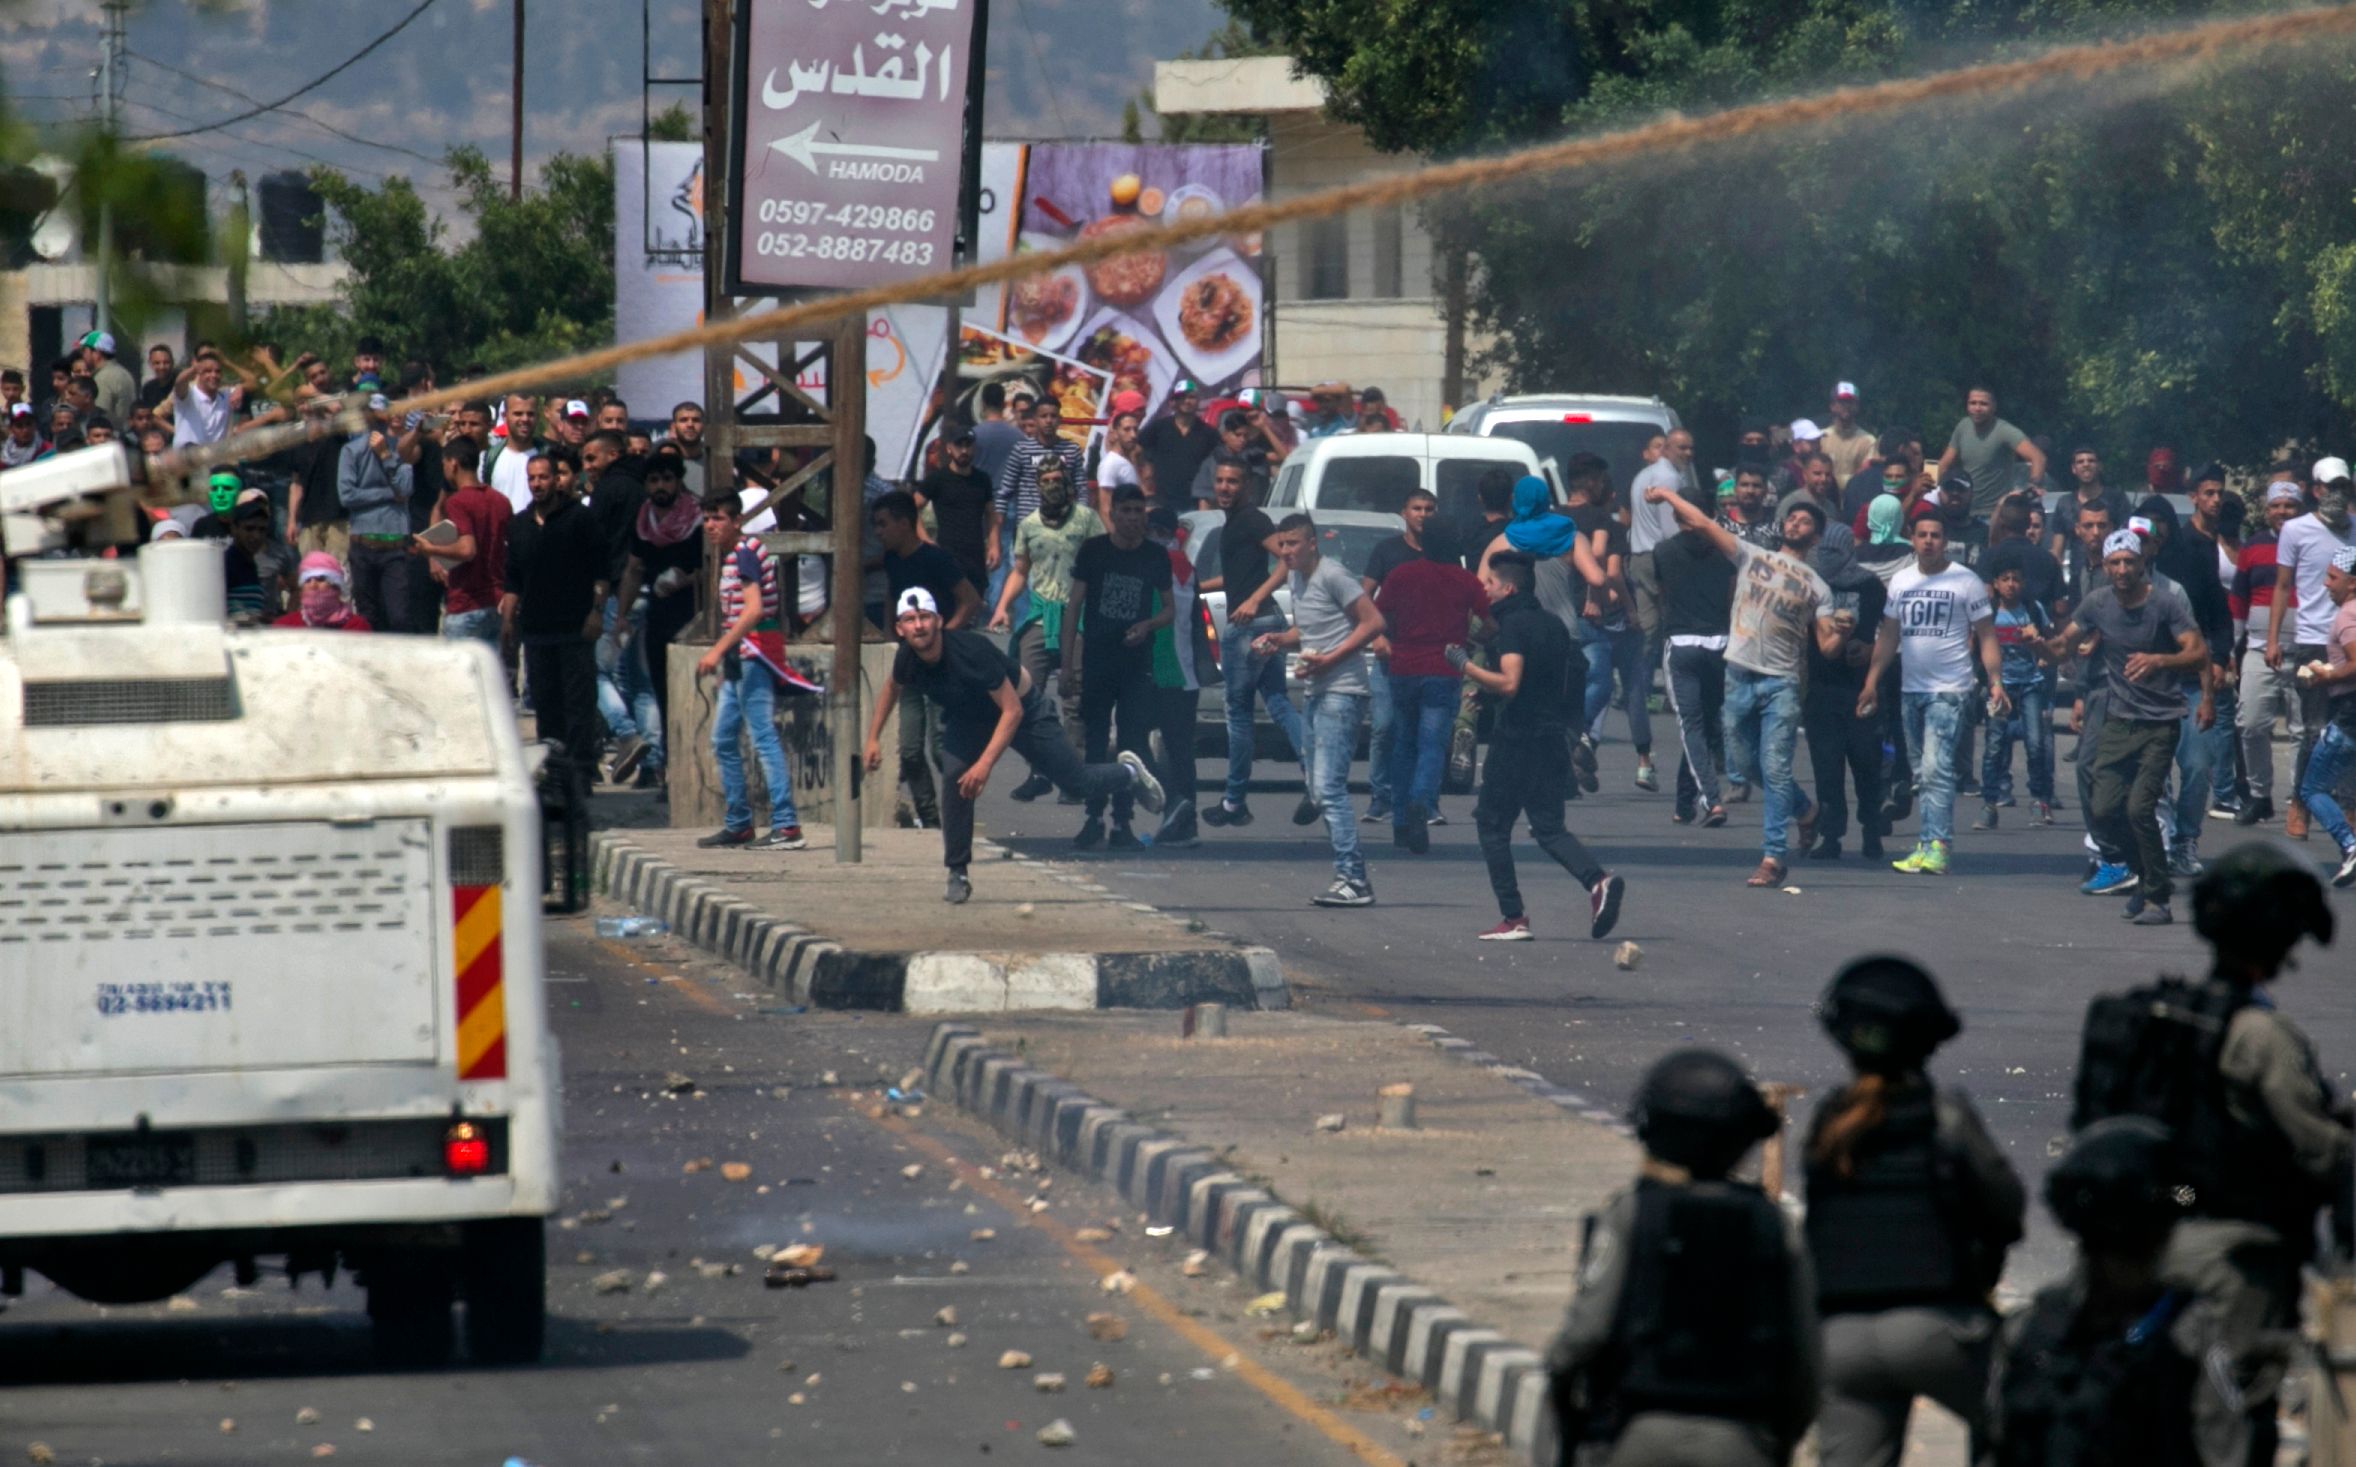 احتجاجات فلسطينية